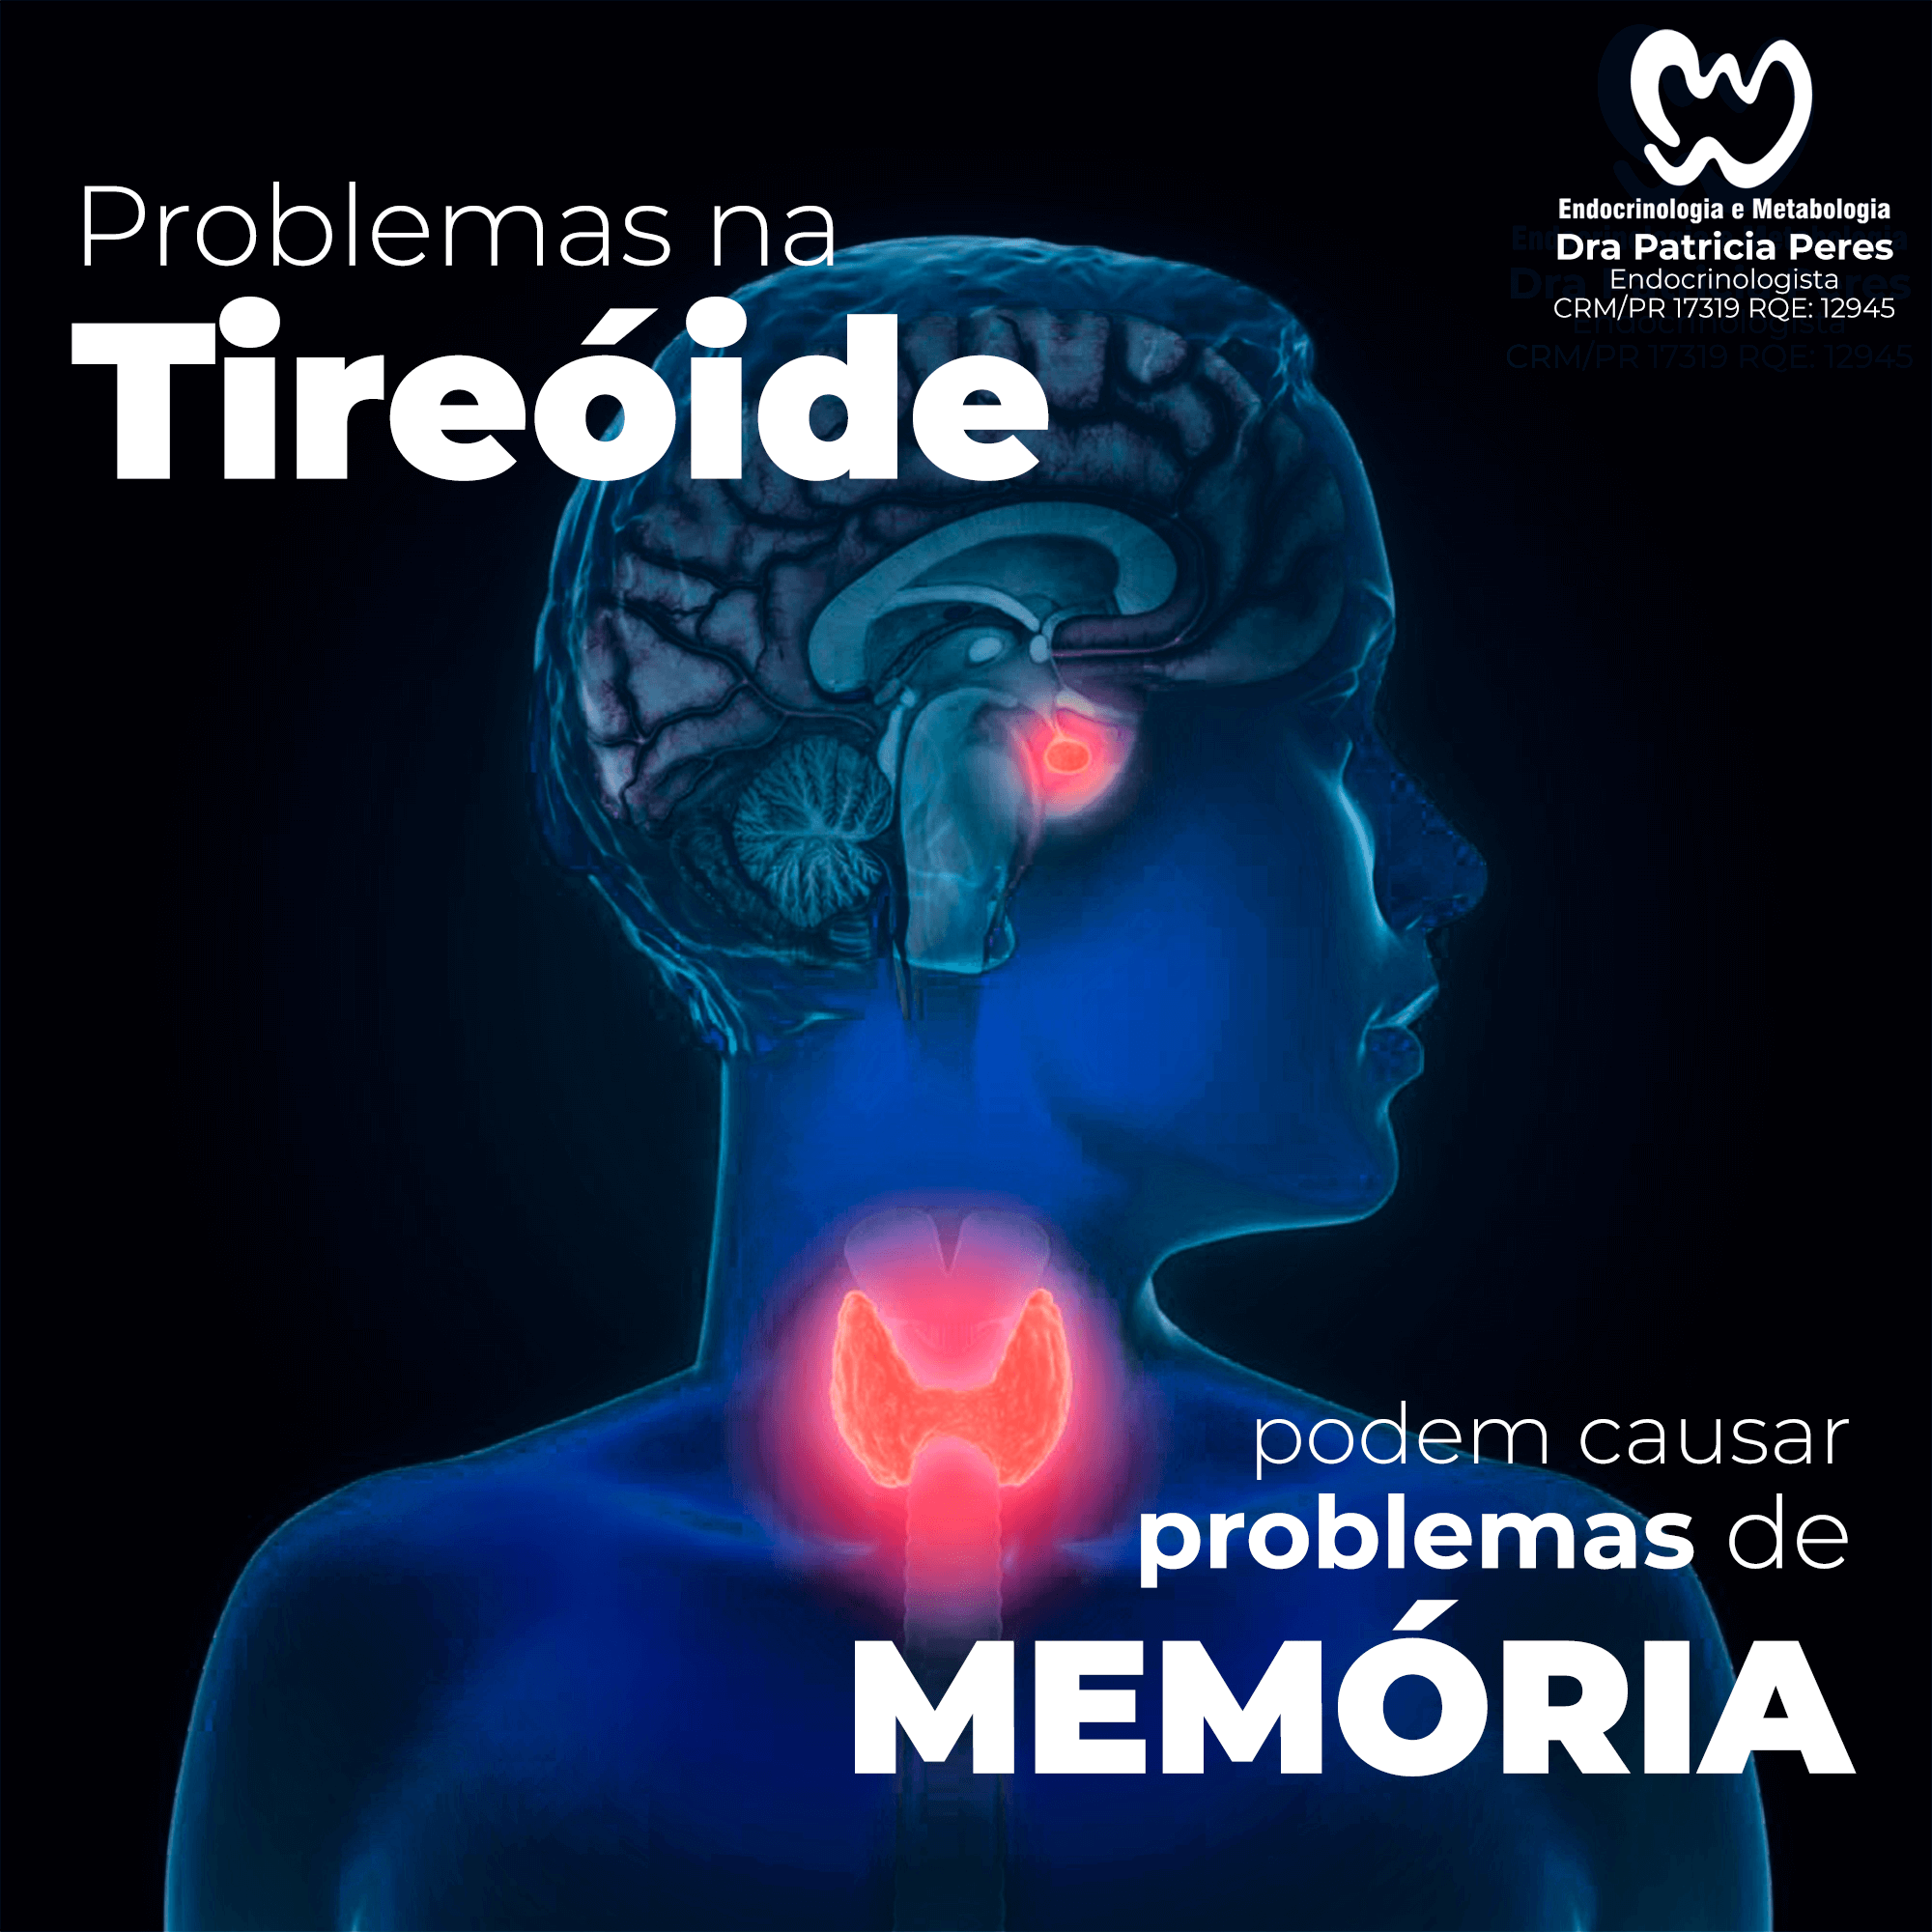 Problemas na tireoide podem causar problemas de memória